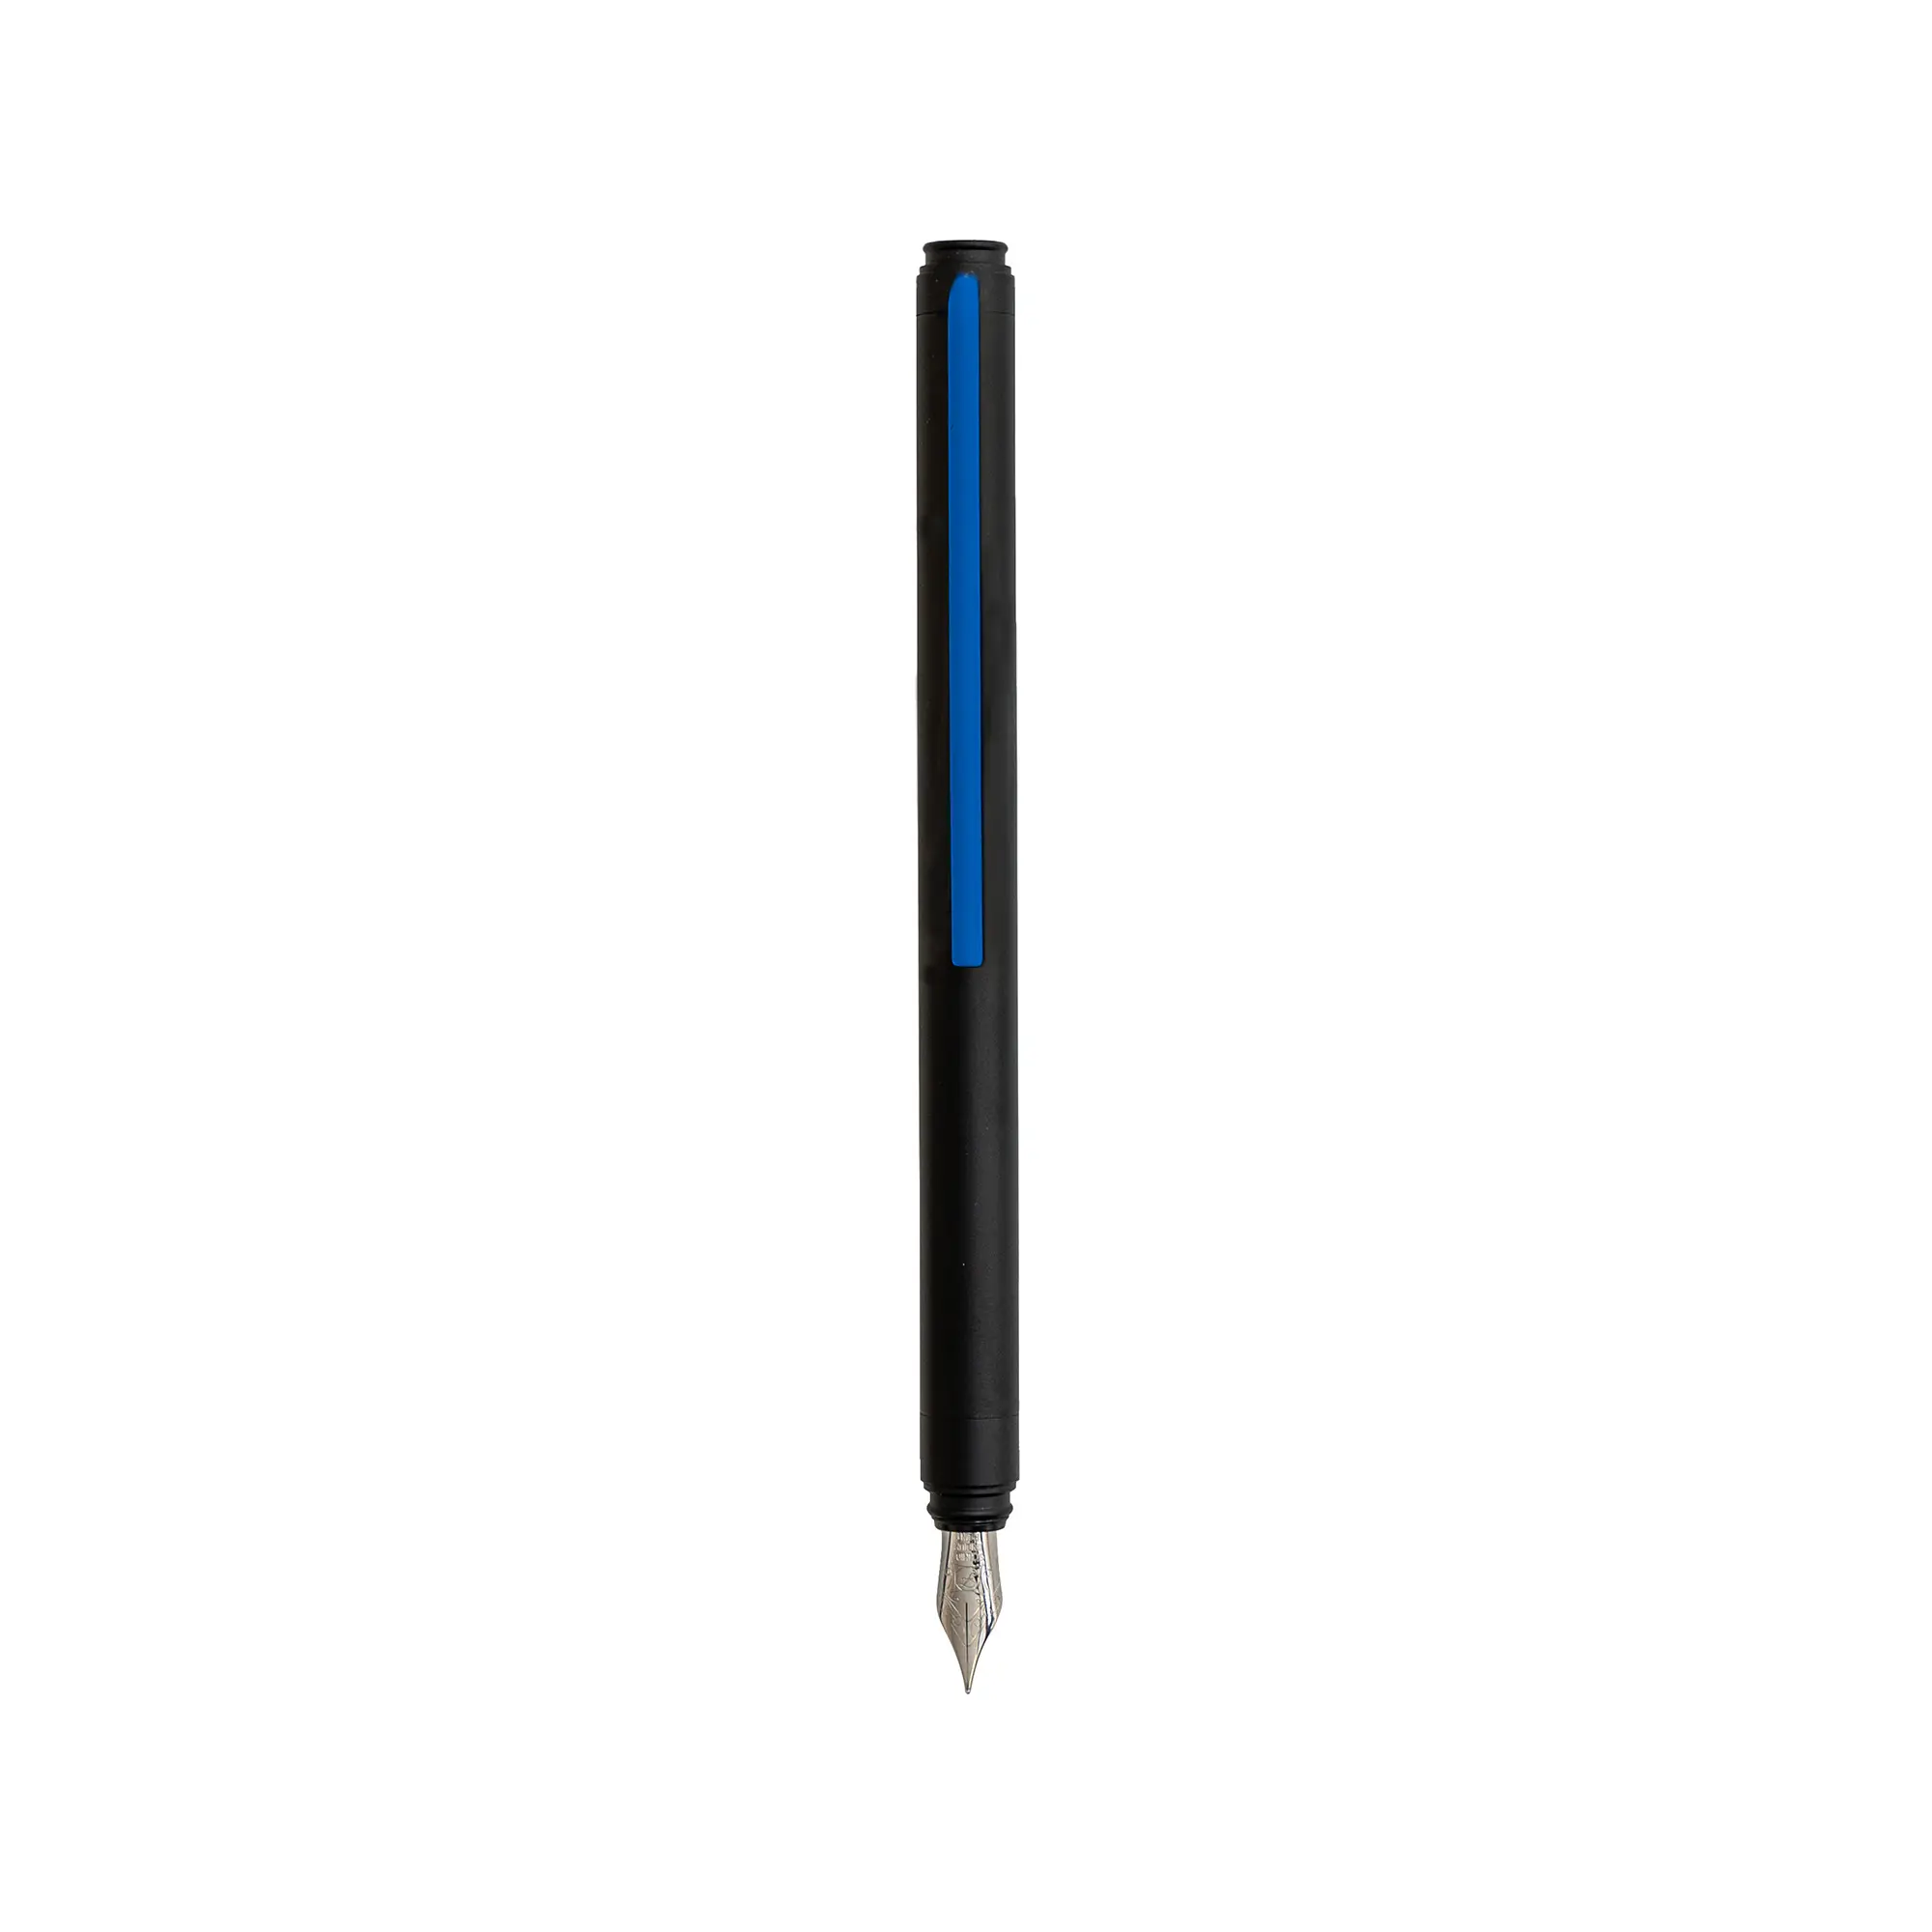 Alüminyum Grafeex dolma kalem tasarım coublue mavi klip Nib ile İtalya'da ince ve özel Logo promosyon hediye için Ideal